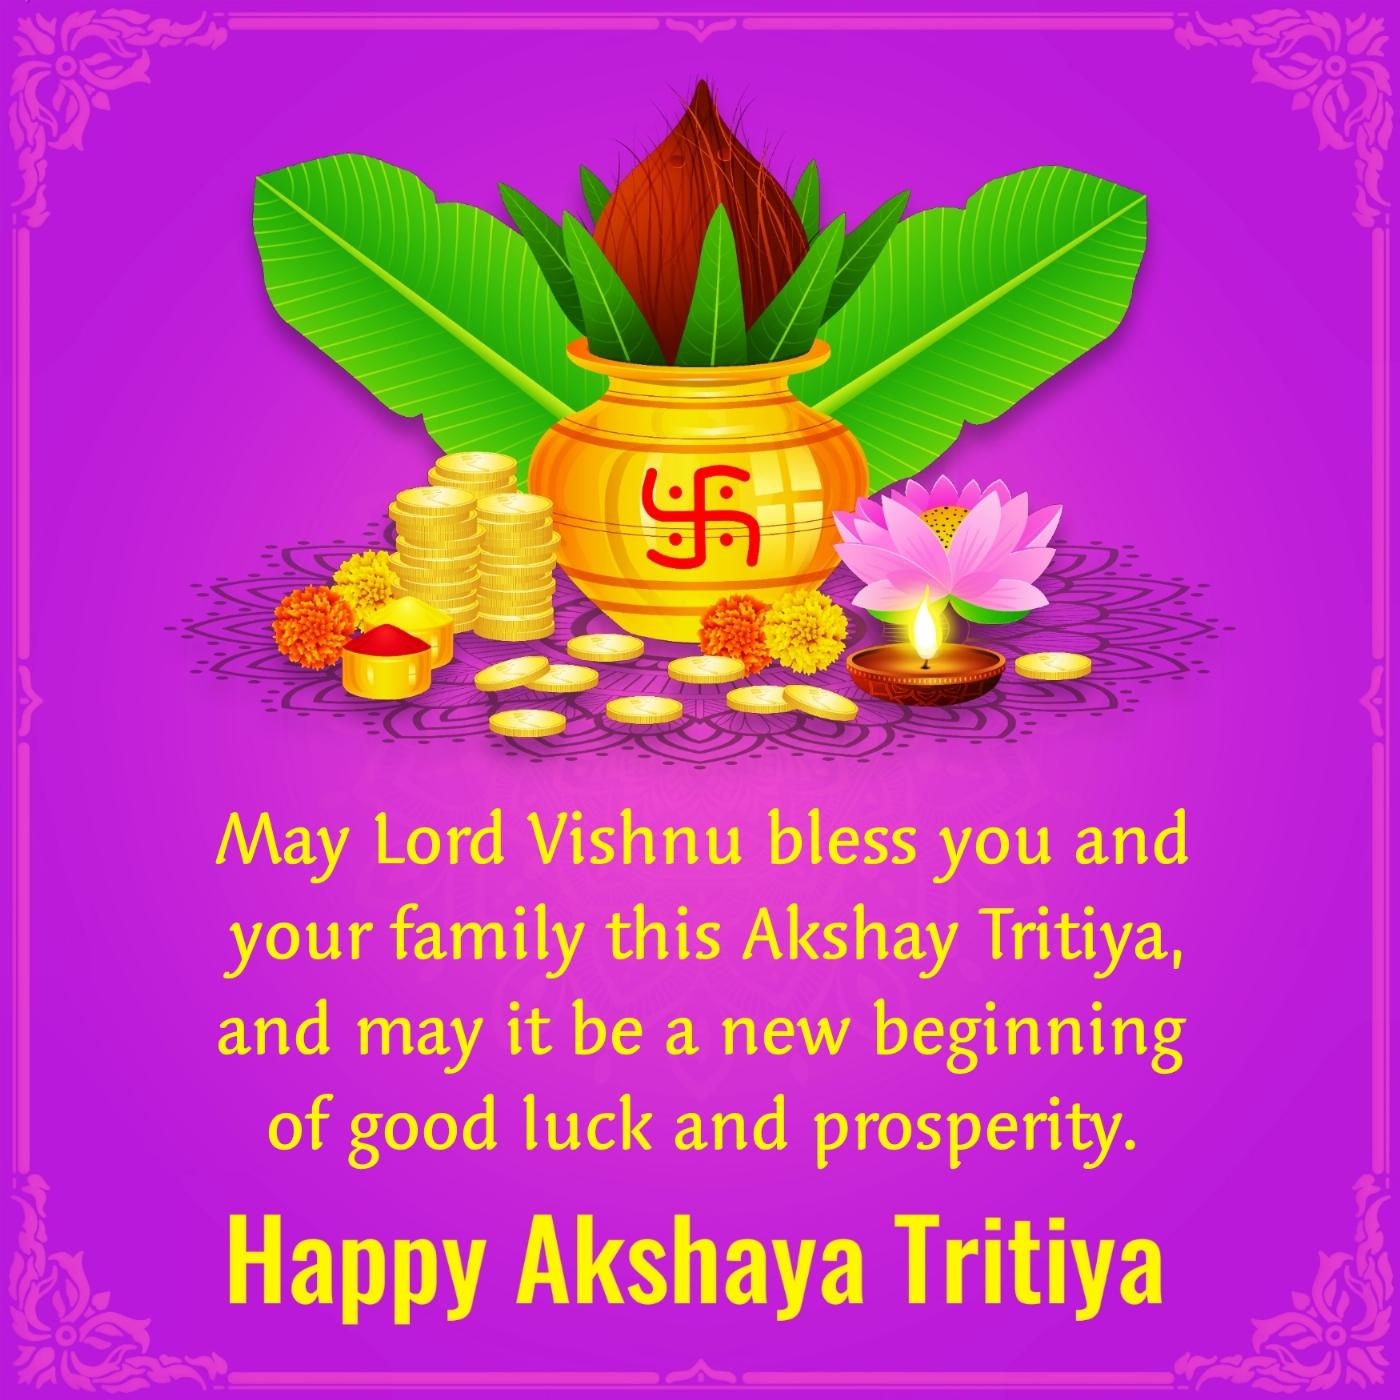 May Lord Vishnu bless you and your family this Akshay Tritiya